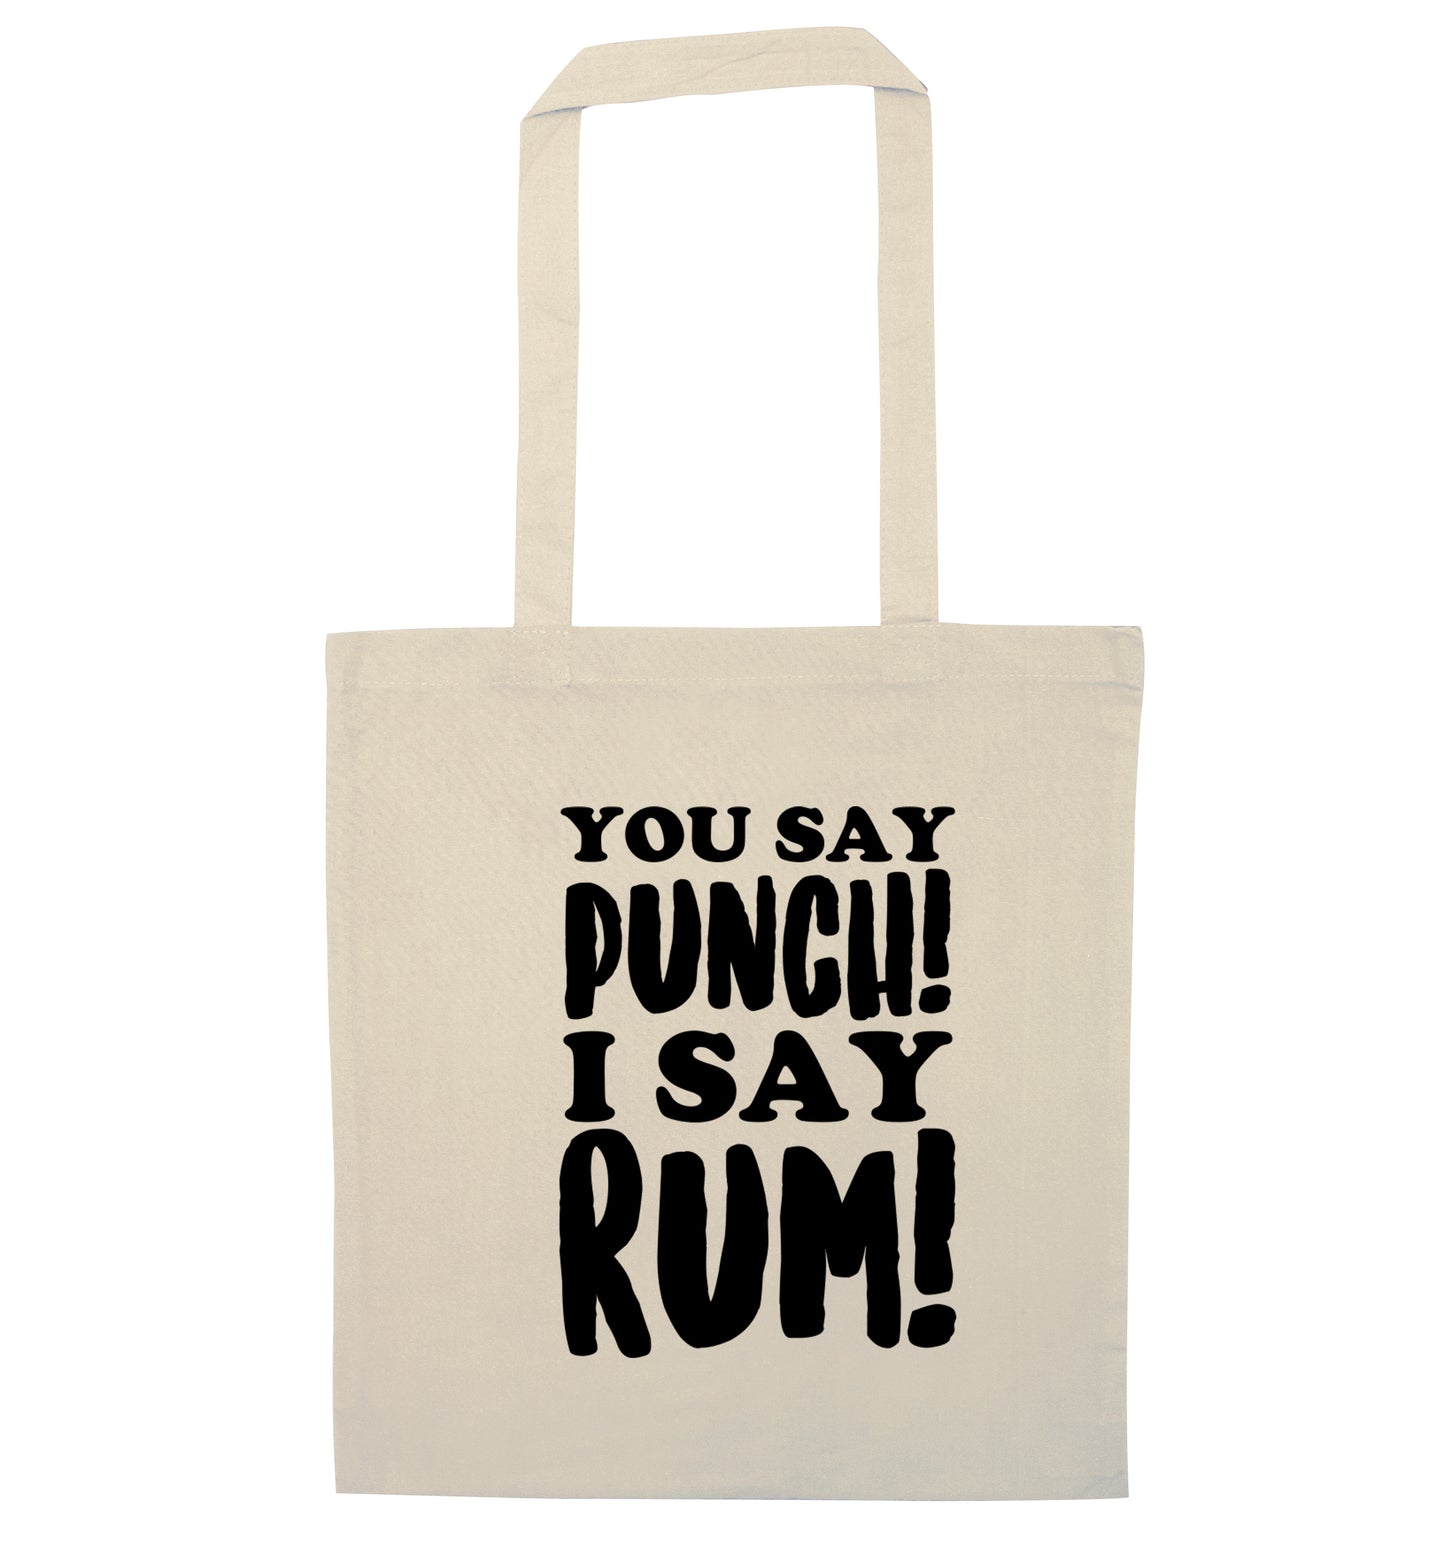 You say punch I say rum! natural tote bag